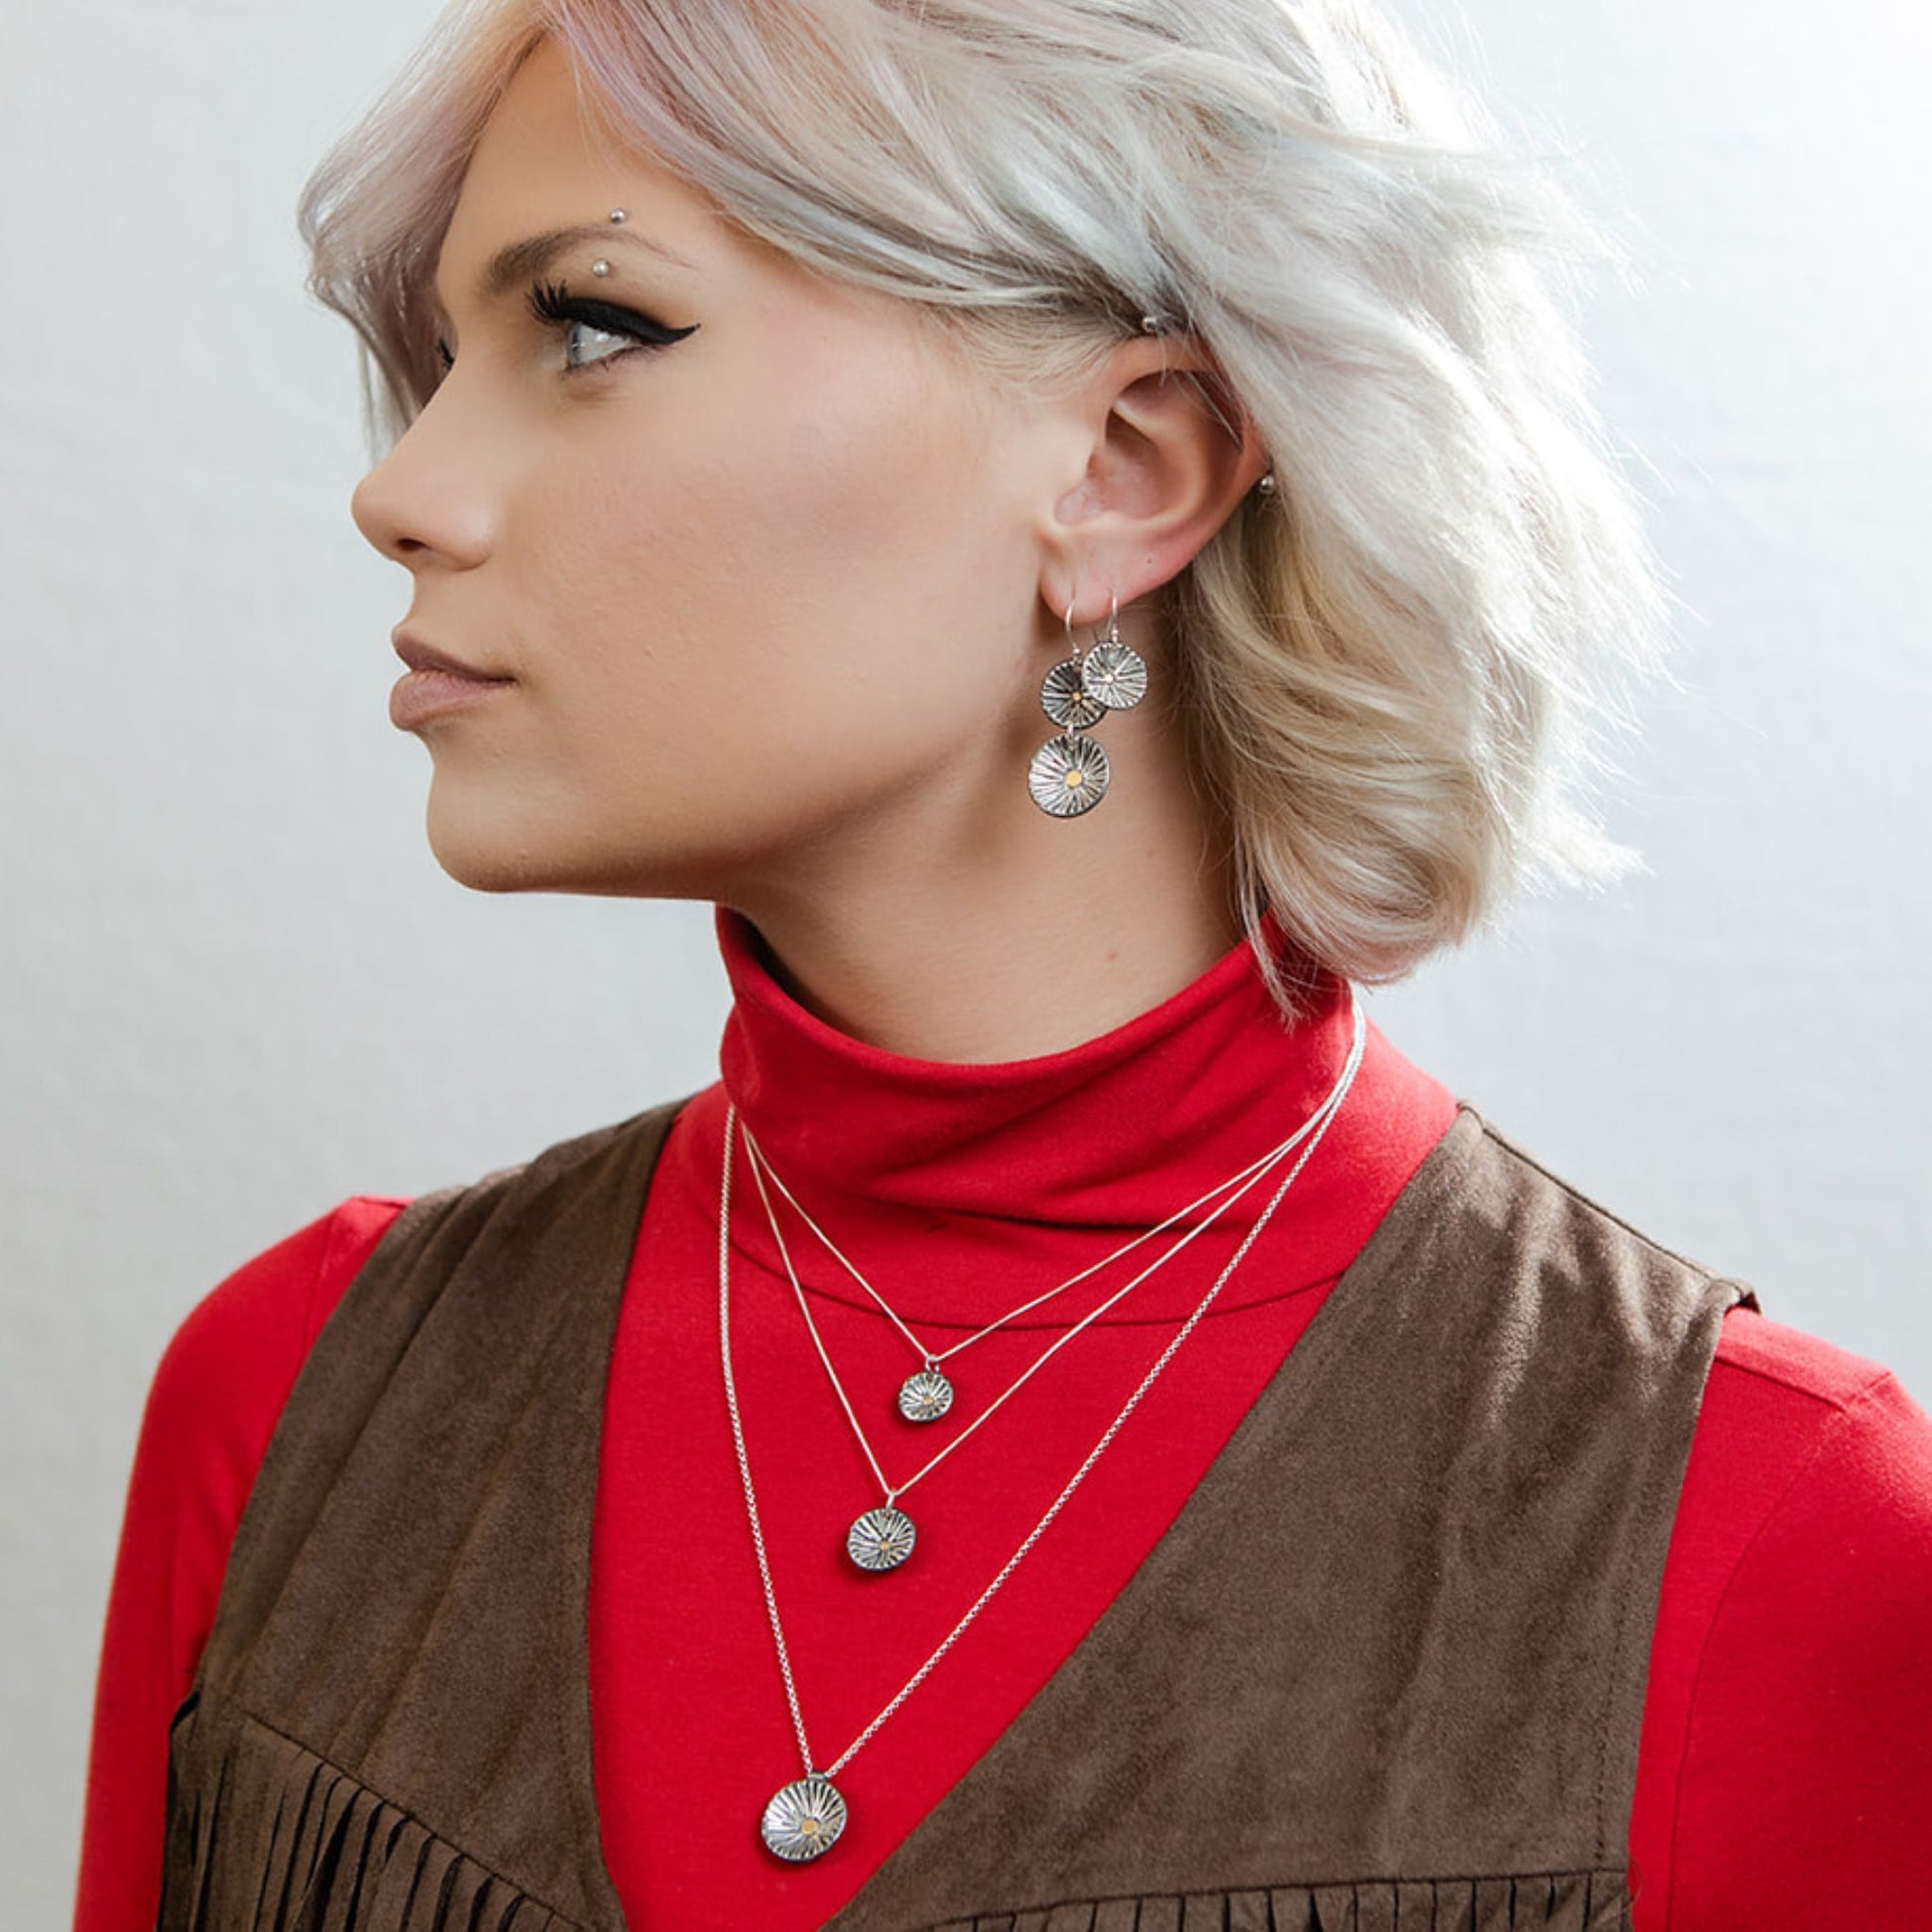 Model wearing double radiance earrings